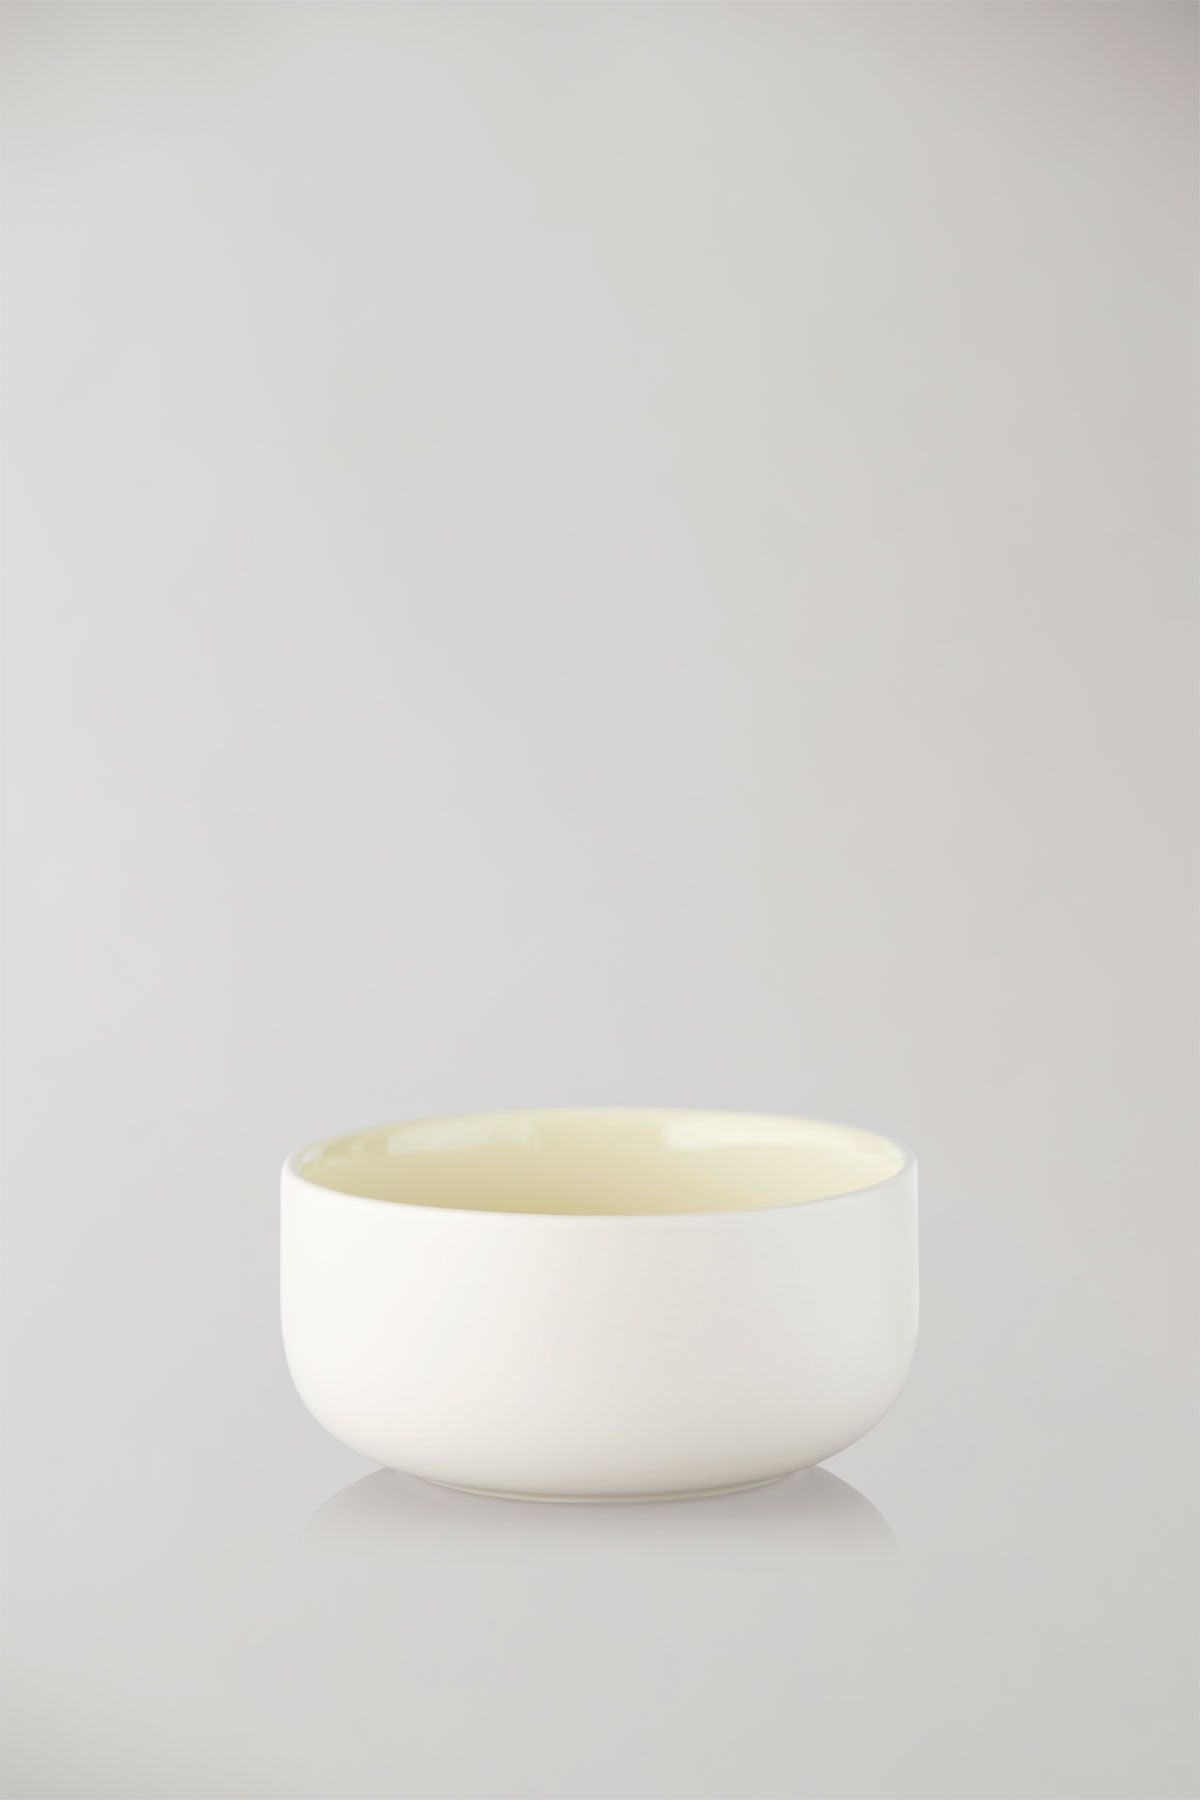 Studio o sadě Clayware 2 Bowls, slonoviny/žlutá